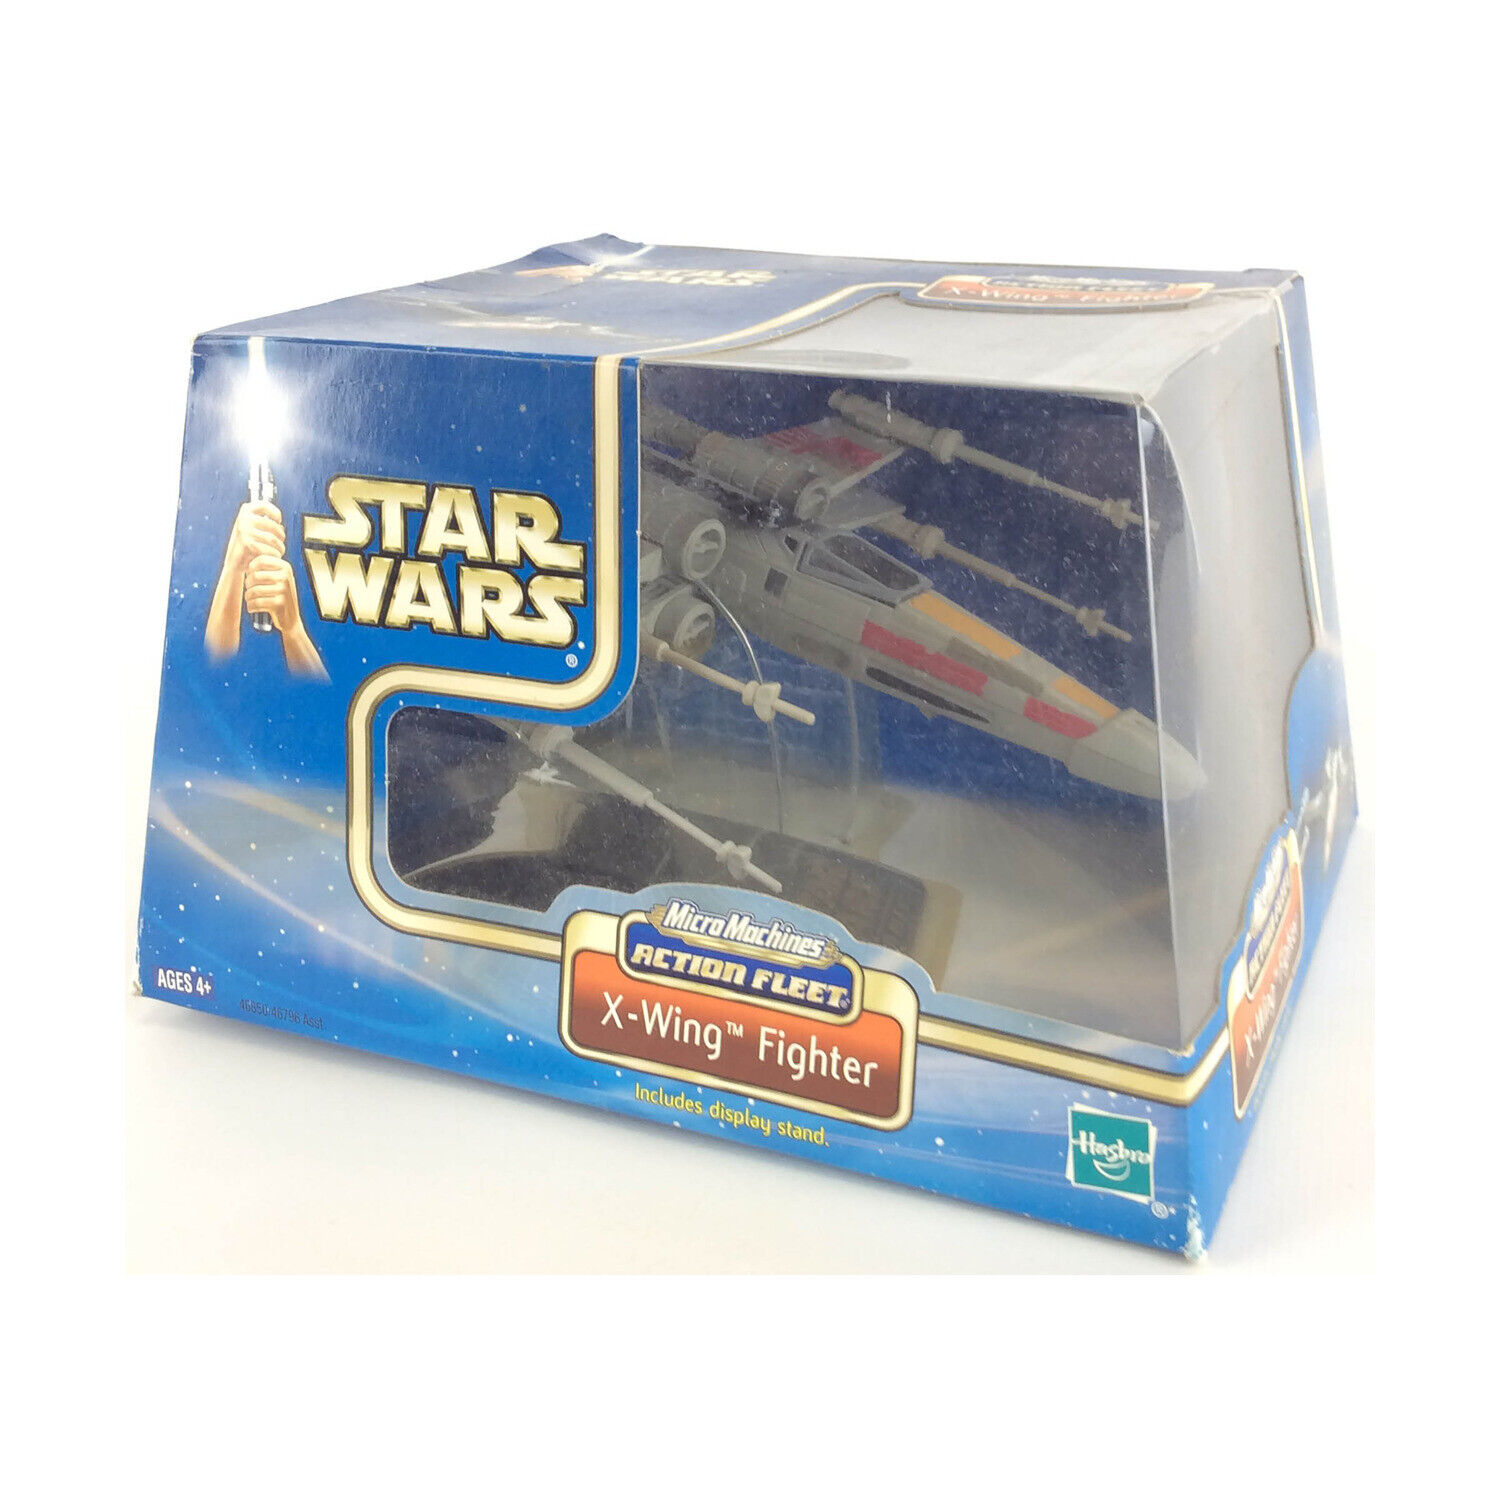 Hasbro Star Wars Action Fleet X-Wing Fighter VG+